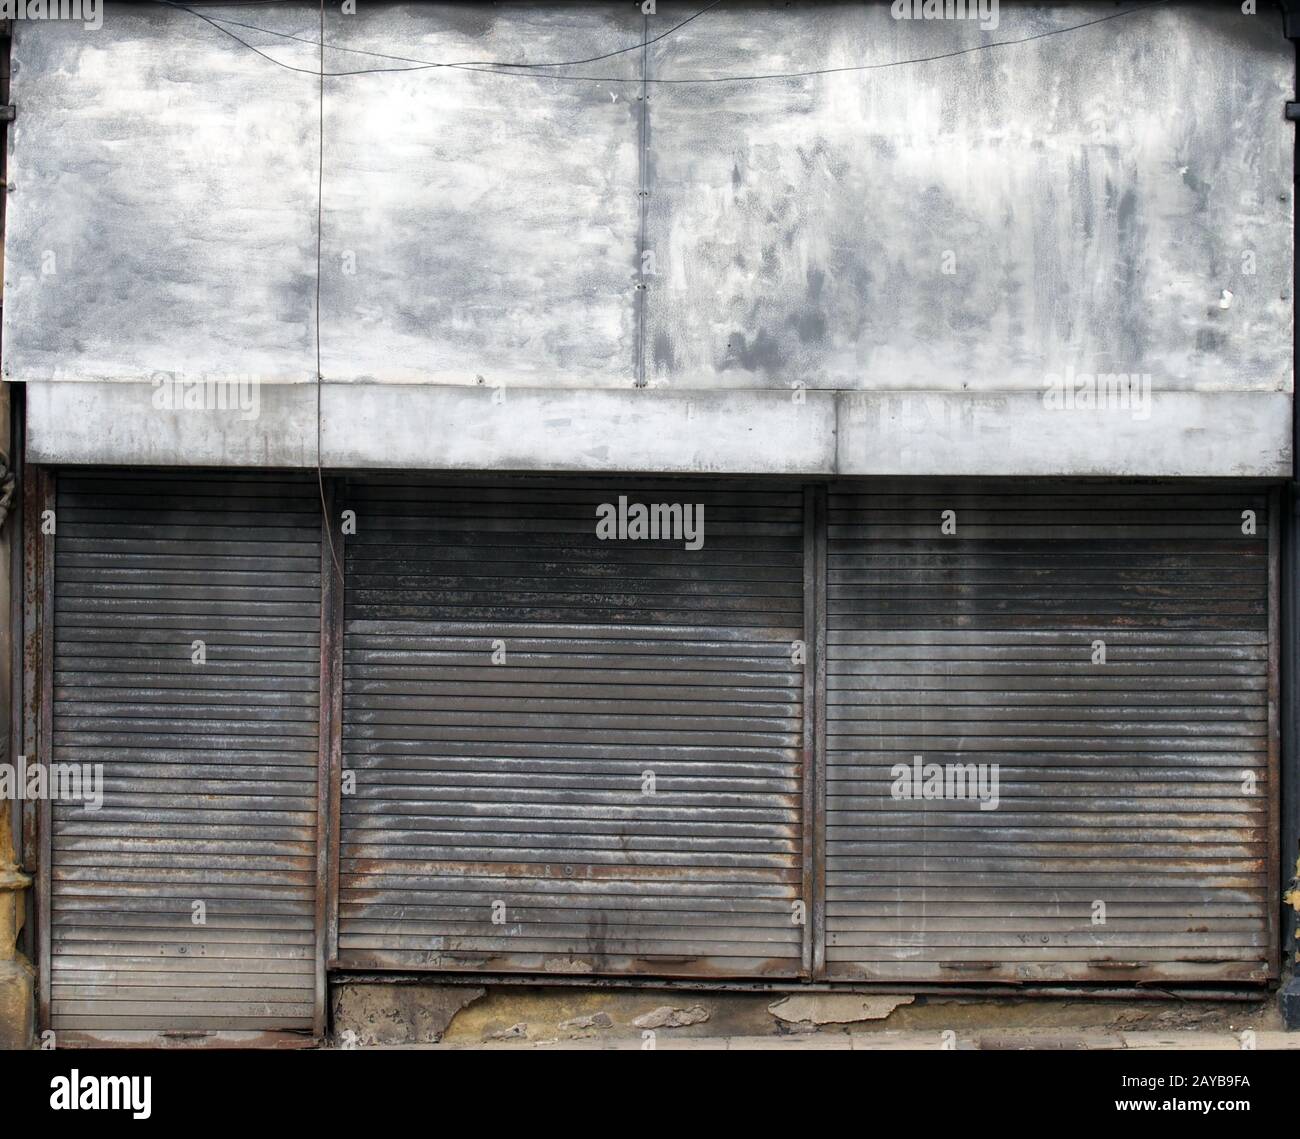 l'avant d'un magasin abandonné dans une rue avec des volets métalliques sales et sales fermés au-dessus de l'avant et de la porte du magasin Banque D'Images